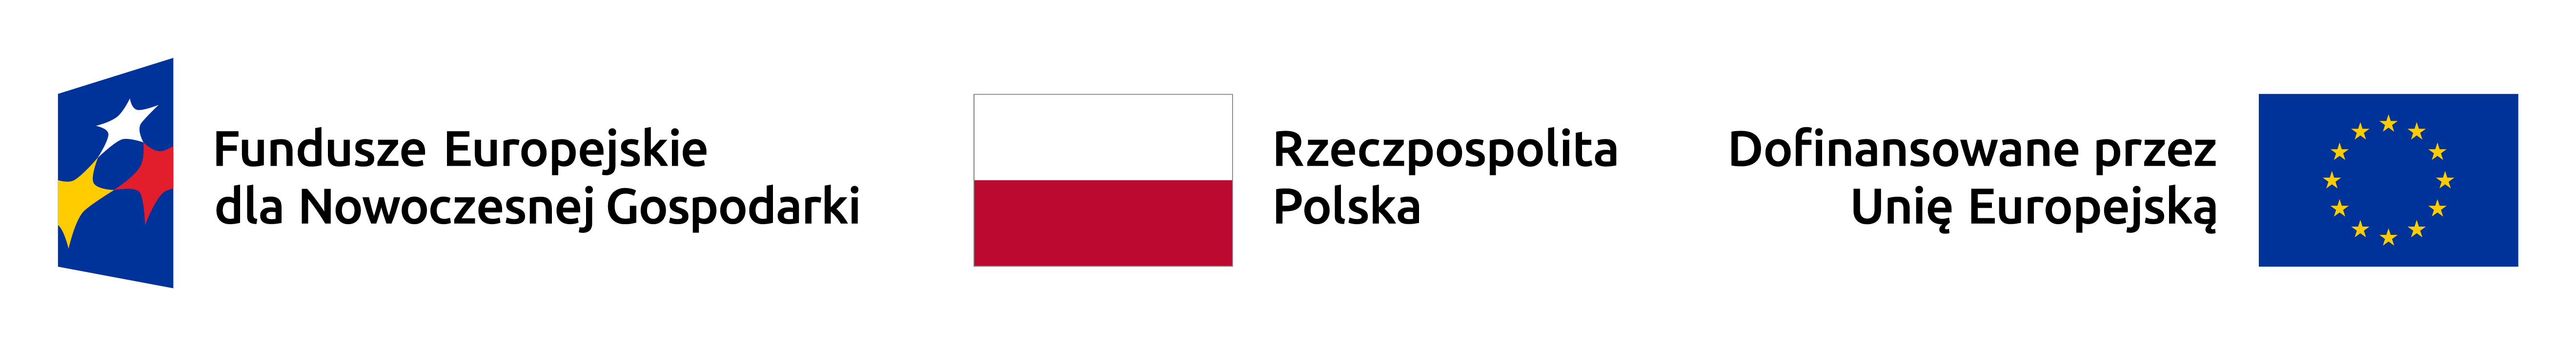 od lewej logotyp programu Fundusze Europejskie dla Nowoczesnej Gospodarki, trzy gwiazdki w kolorach żółtym, białym i czerwonym na granatowym tle, biało-czerwona flaga Polski a obok napis Rzeczpospolita Polska, flaga UE a obok napis dofinansowane przez Unię Europejską 